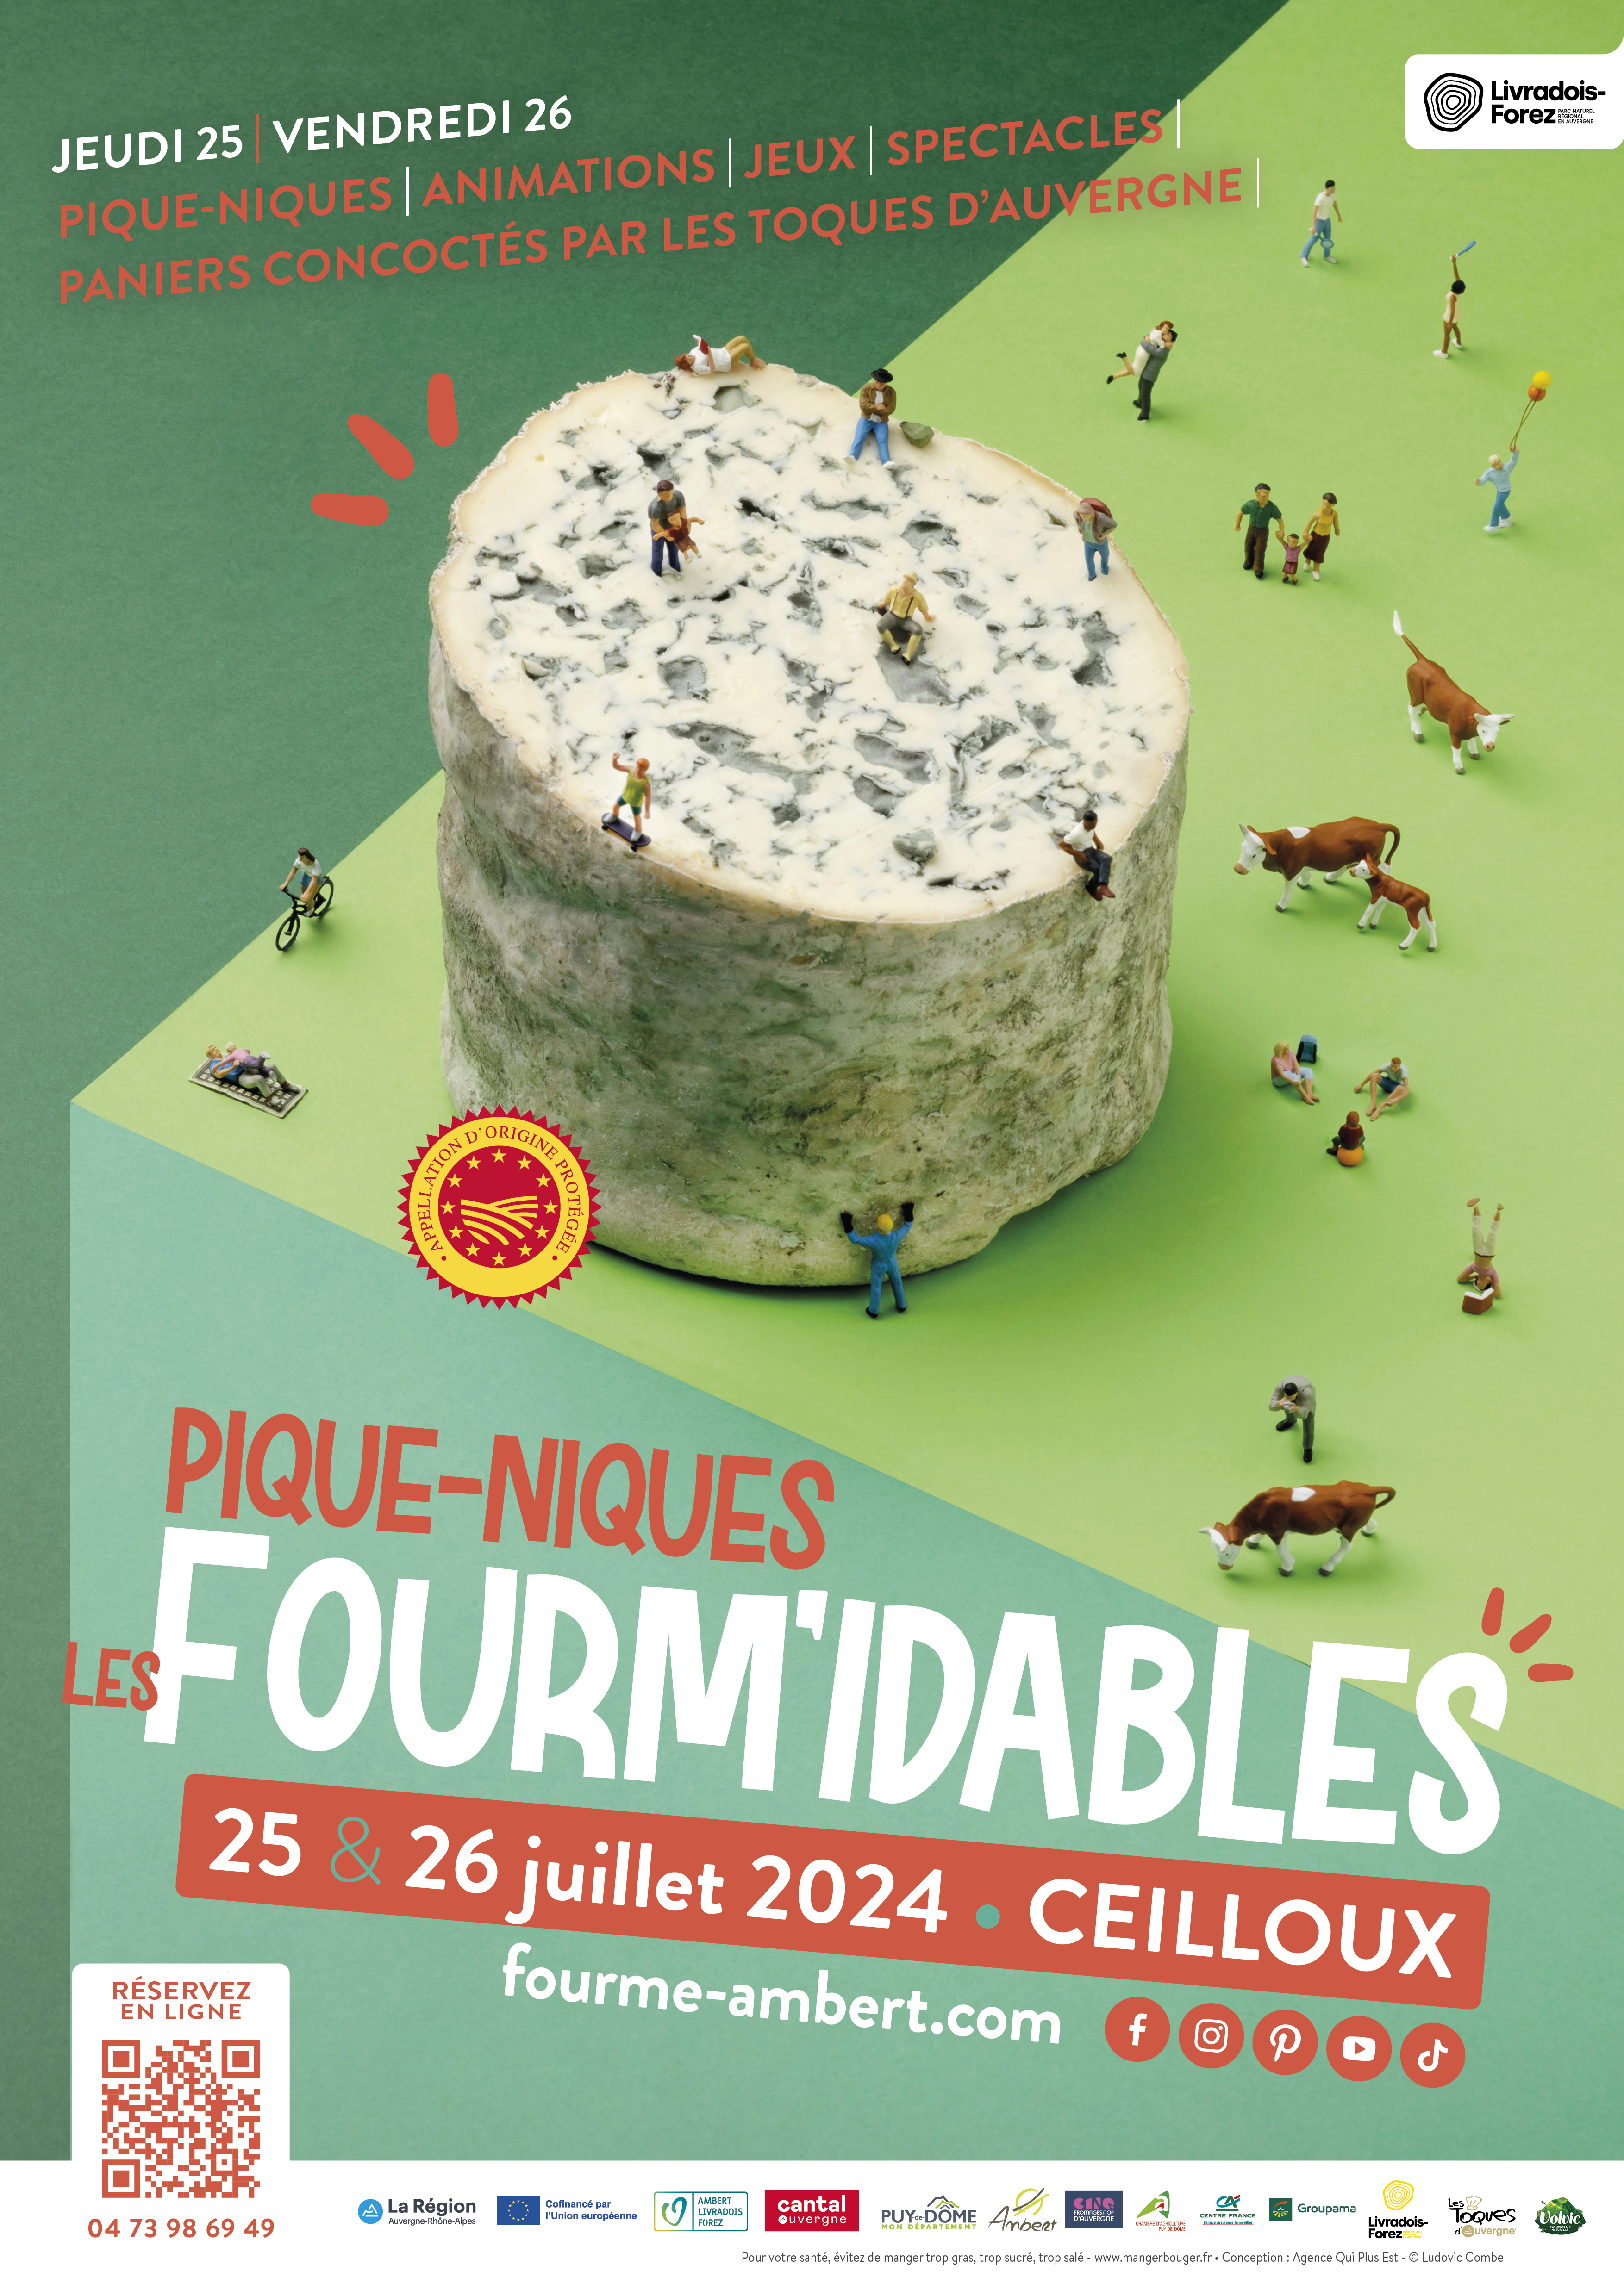 FOURM’idables pique-niques #2024 // Ceilloux